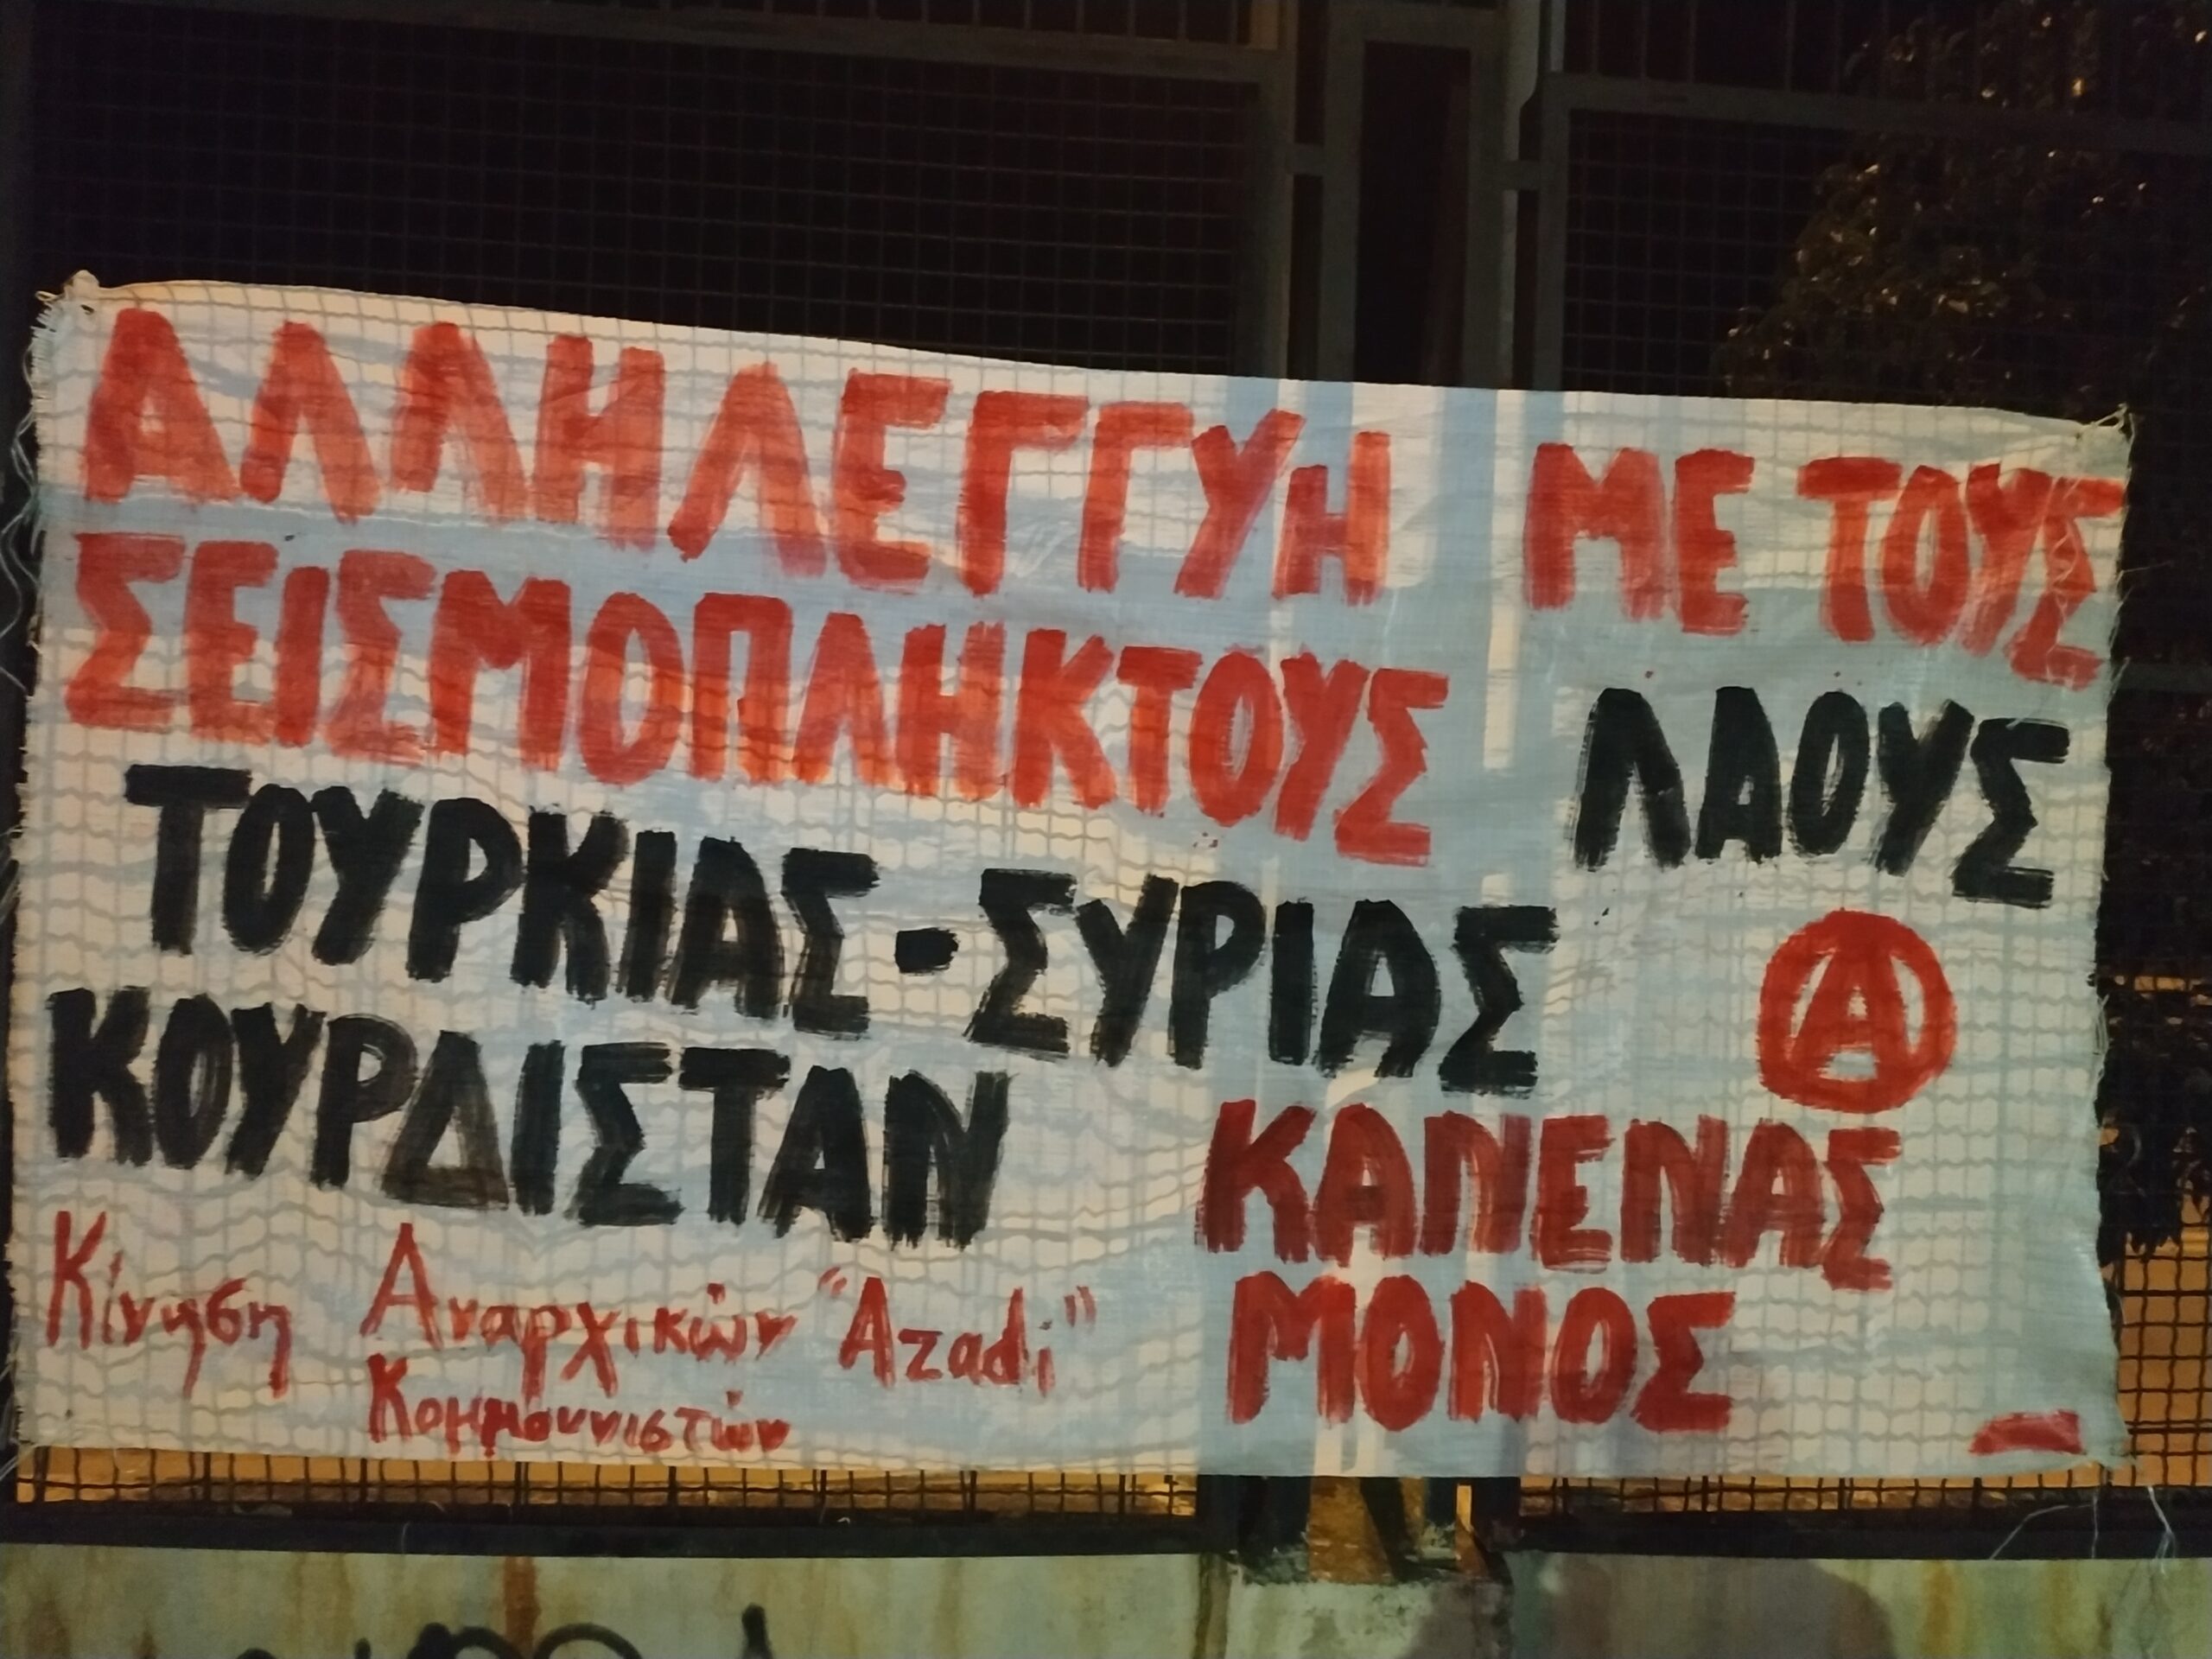 Σ’ Ελλάδα, Τουρκία και Συρία, ο ανθρώπινος πόνος είναι ίδιος | Κίνηση Αναρχικών Κομμουνιστών ”Azadi”